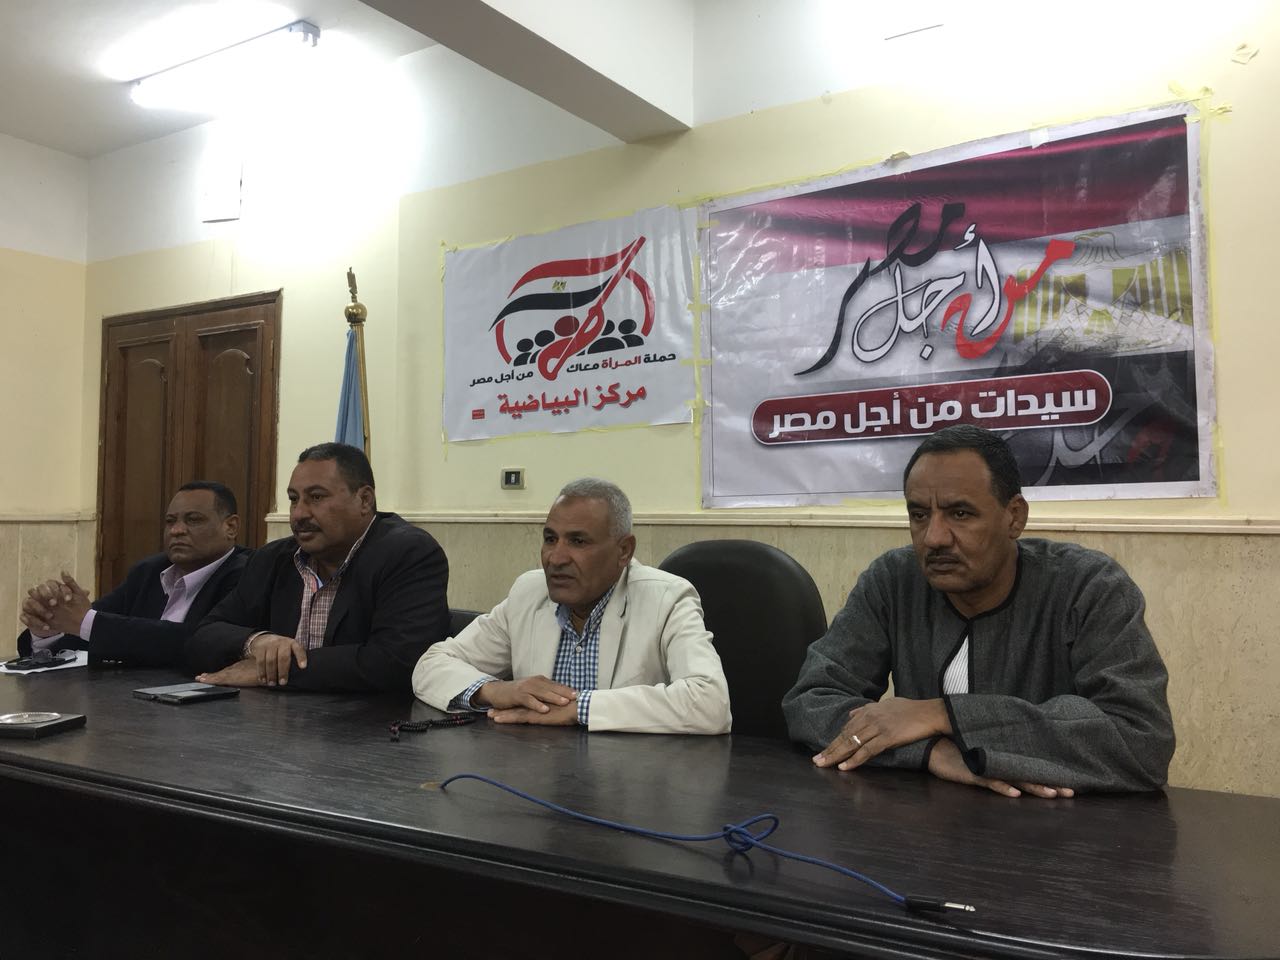 أول مؤتمر جماهيري لـمن أجل مصر لفتح تواصل بين الأهالي وقيادات المحافظة (4)